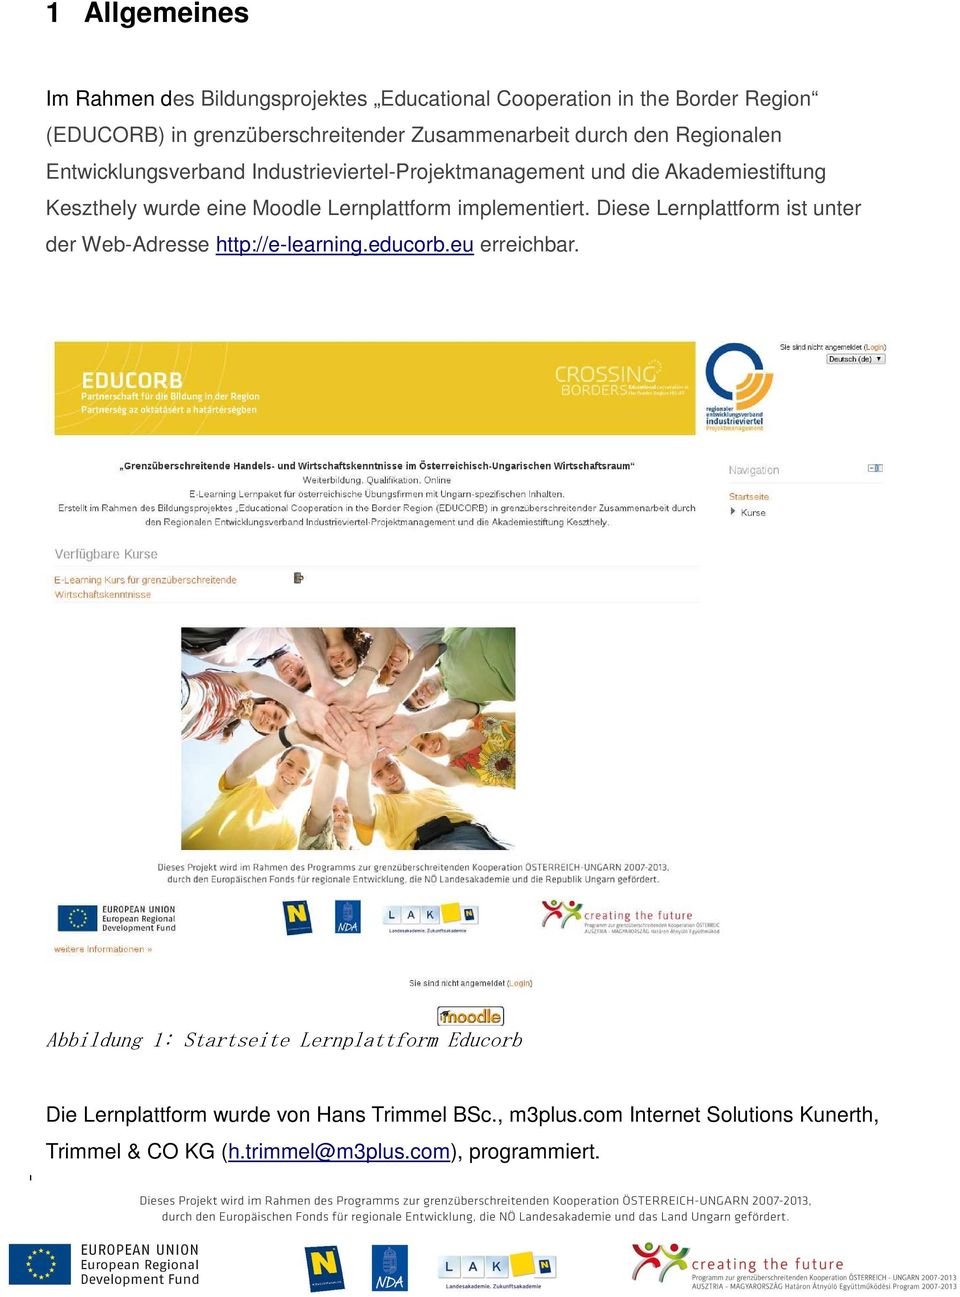 implementiert. Diese Lernplattform ist unter der Web-Adresse http://e-learning.educorb.eu erreichbar.